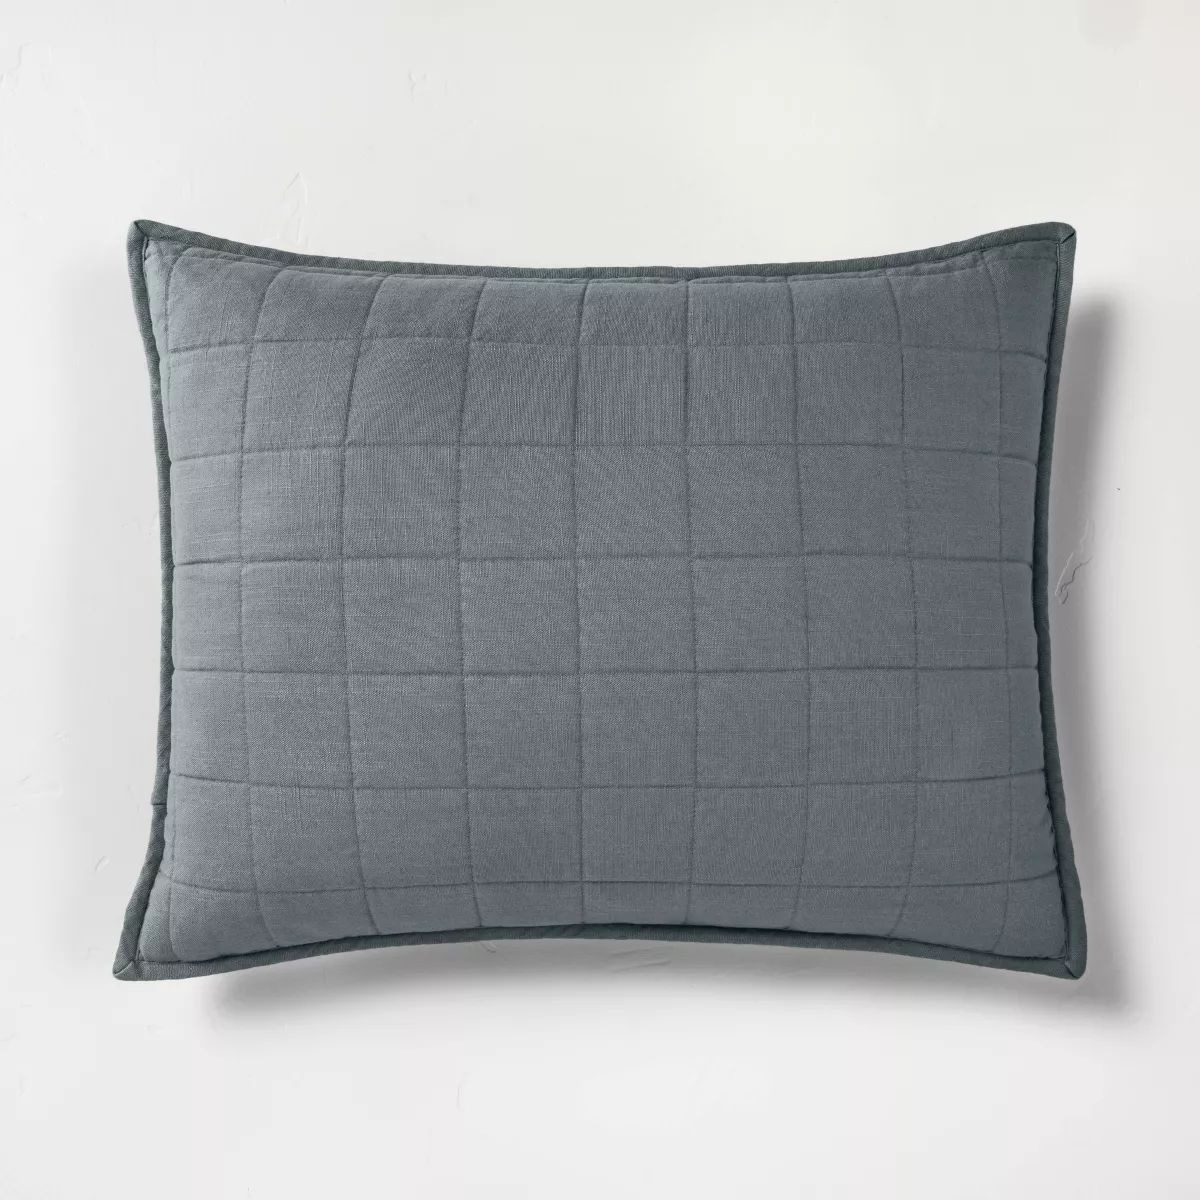 Heavyweight Linen Blend Quilt Pillow Sham - Casaluna™ | Target